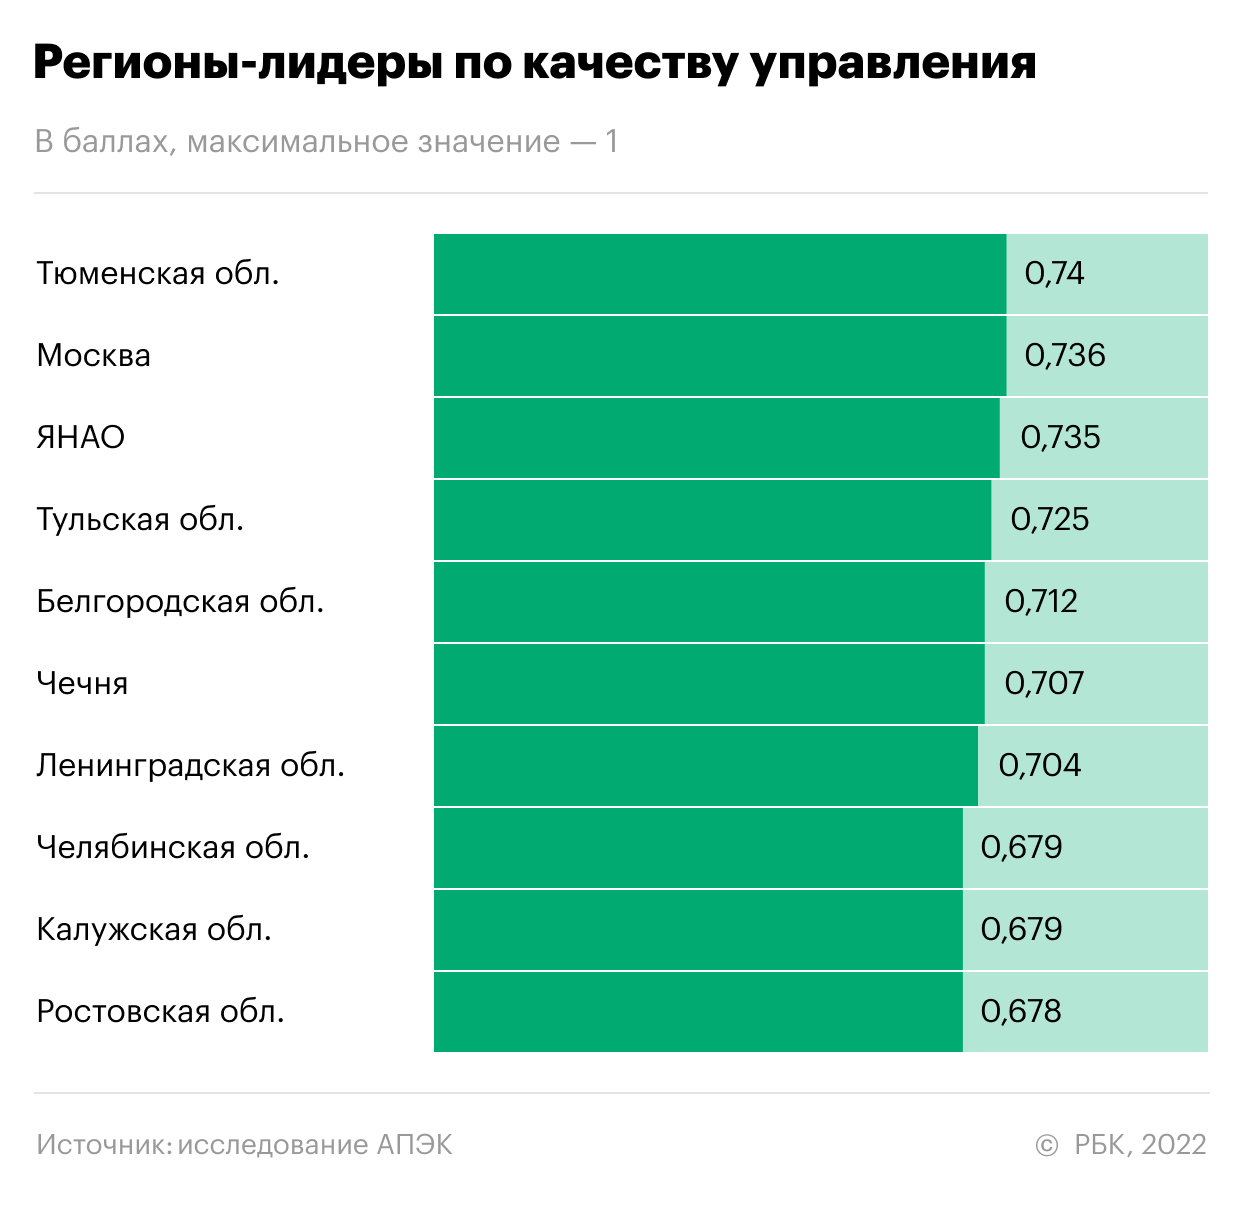 Политологи назвали лучшие и худшие регионы России по качеству управления